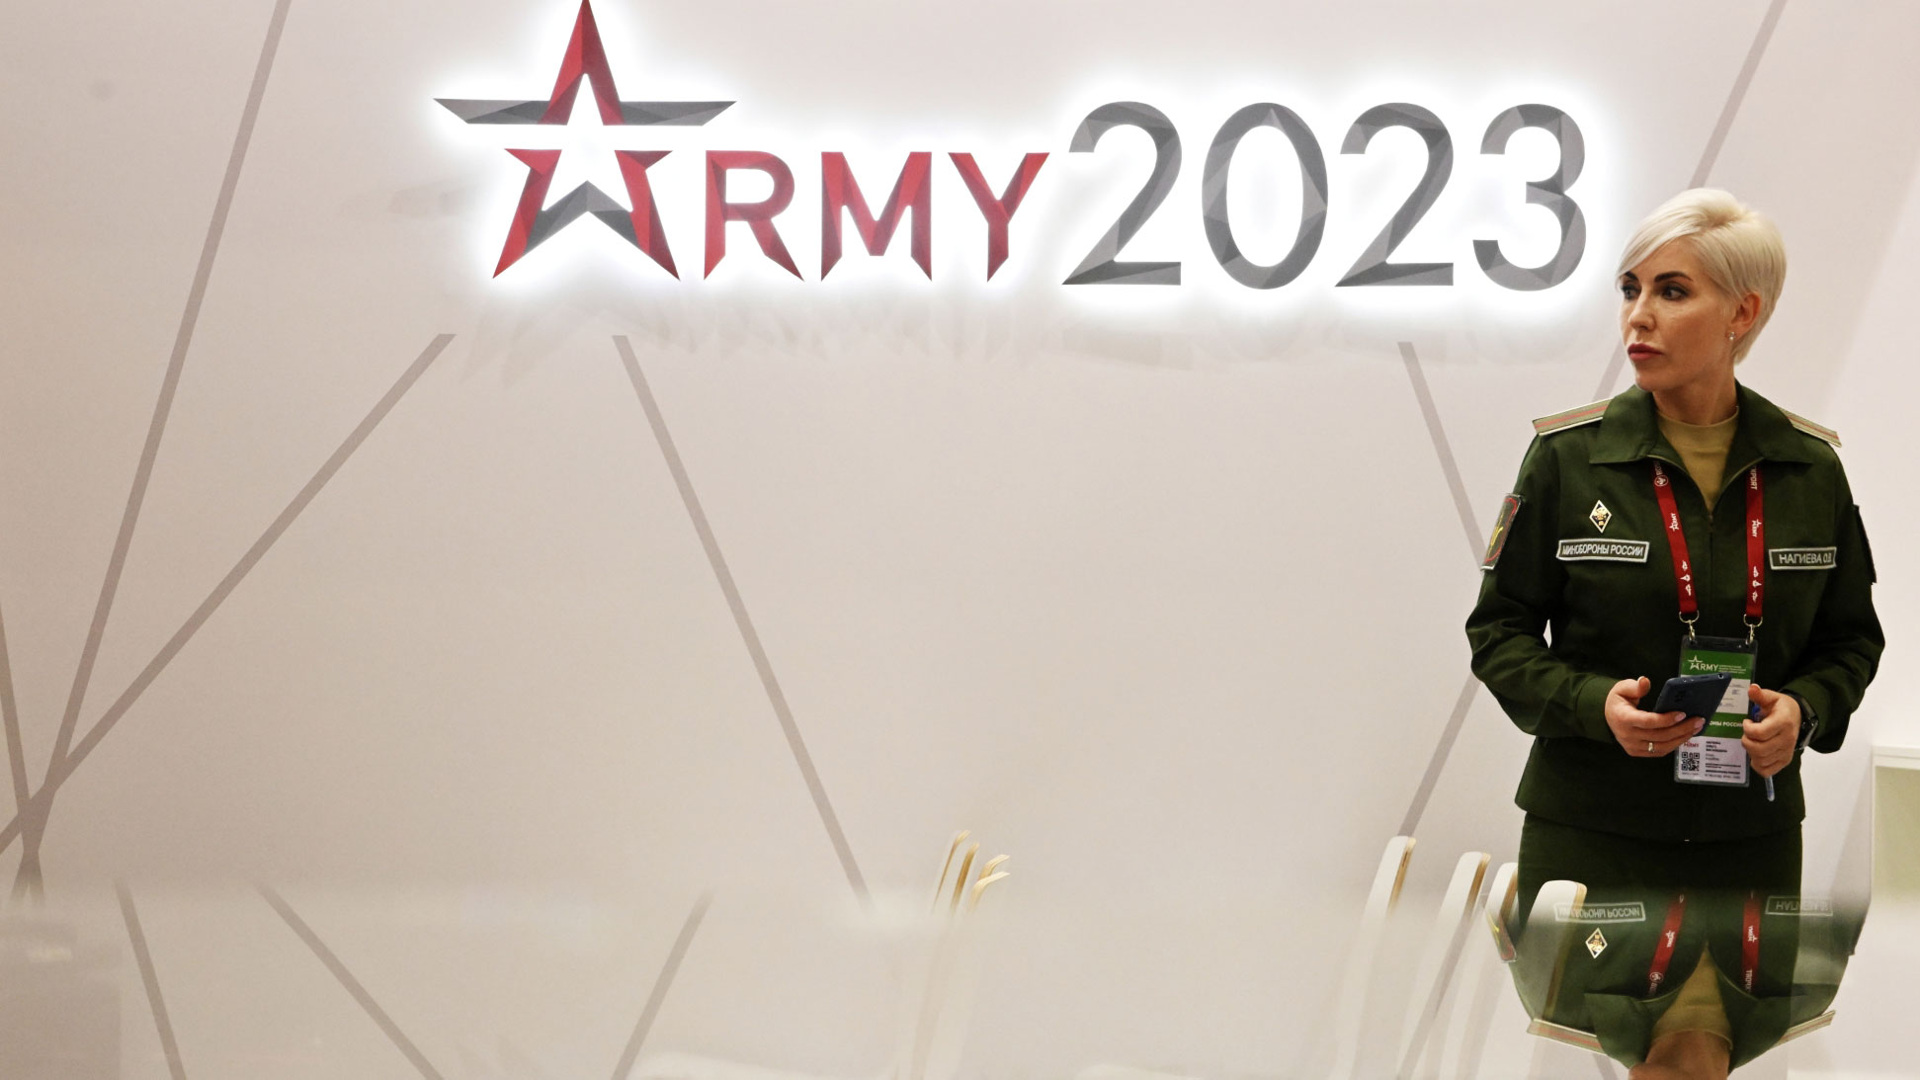 Робоавиа. Форум армия 2023. Международный форум «aрмия-2023». Армия 2023 логотип. Форум армия 2023 звезда.